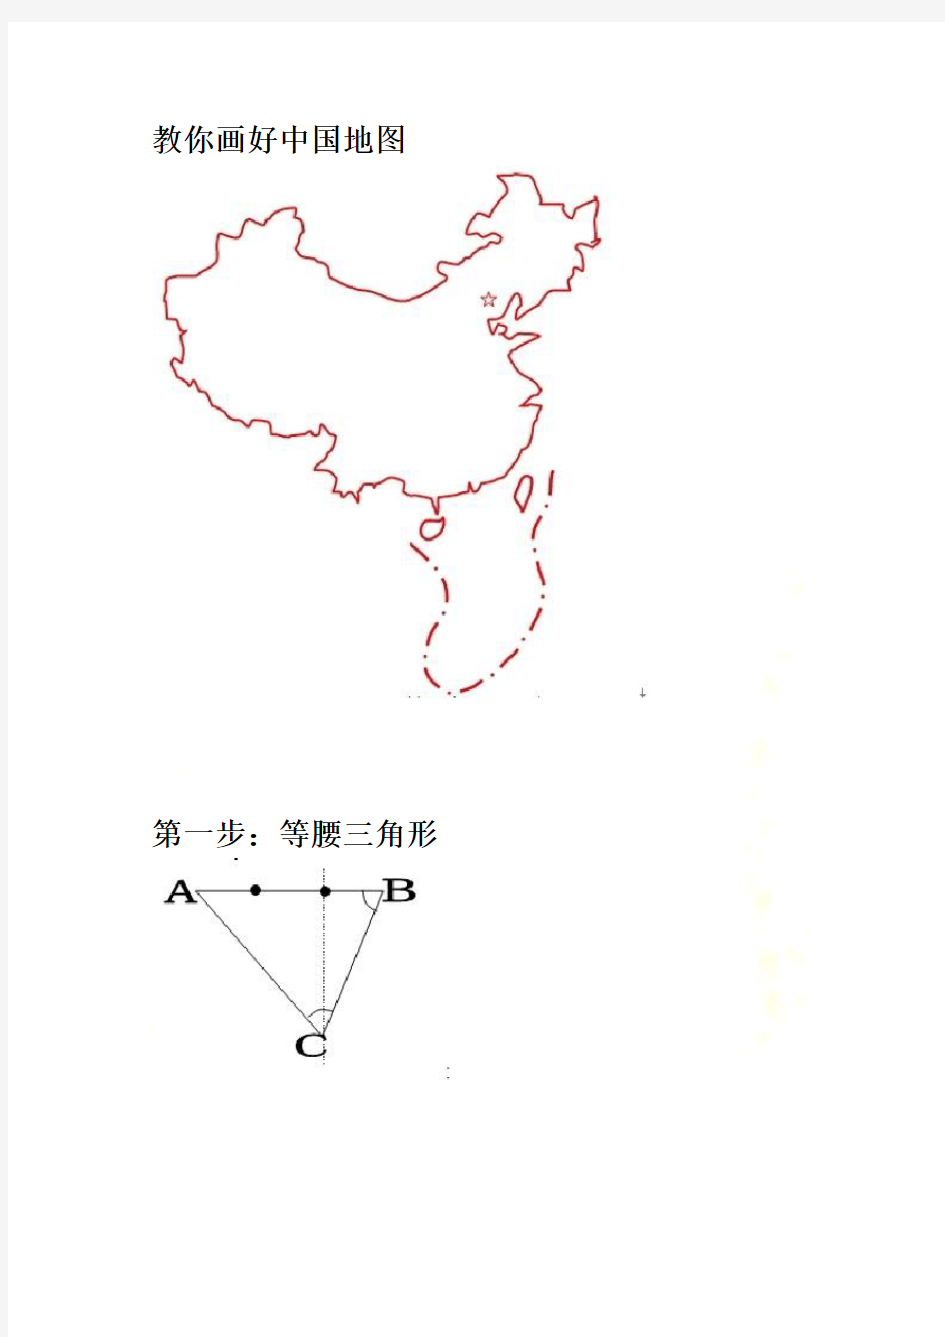 手把手教你如何画好中国地图